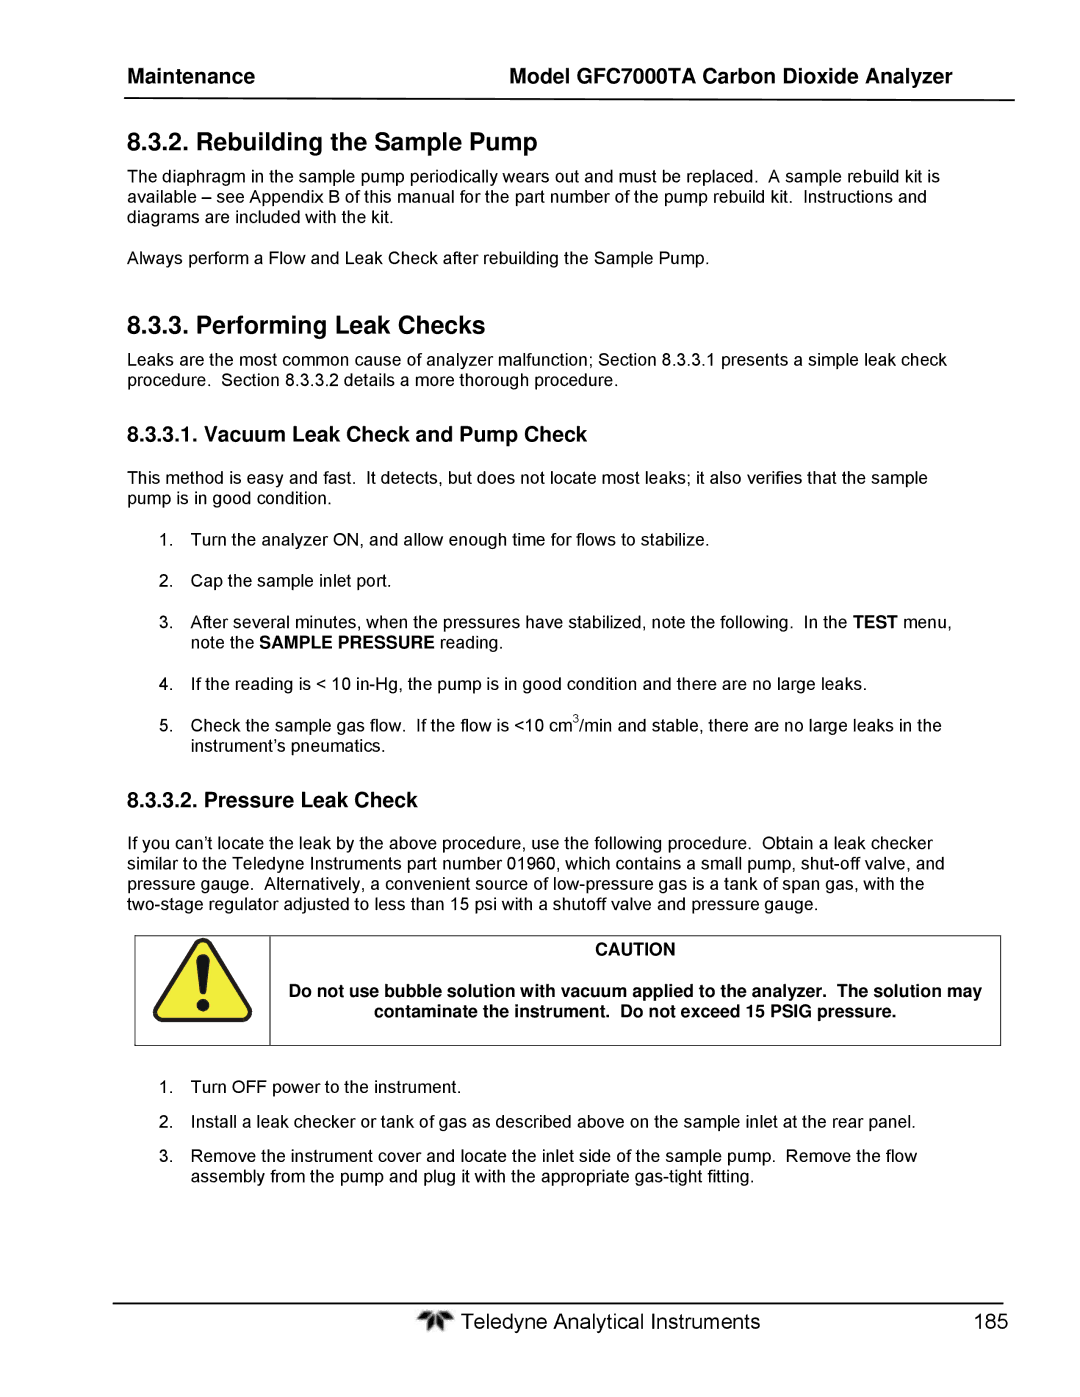 Teledyne gfc 7000ta operation manual Rebuilding the Sample Pump, Performing Leak Checks, Vacuum Leak Check and Pump Check 